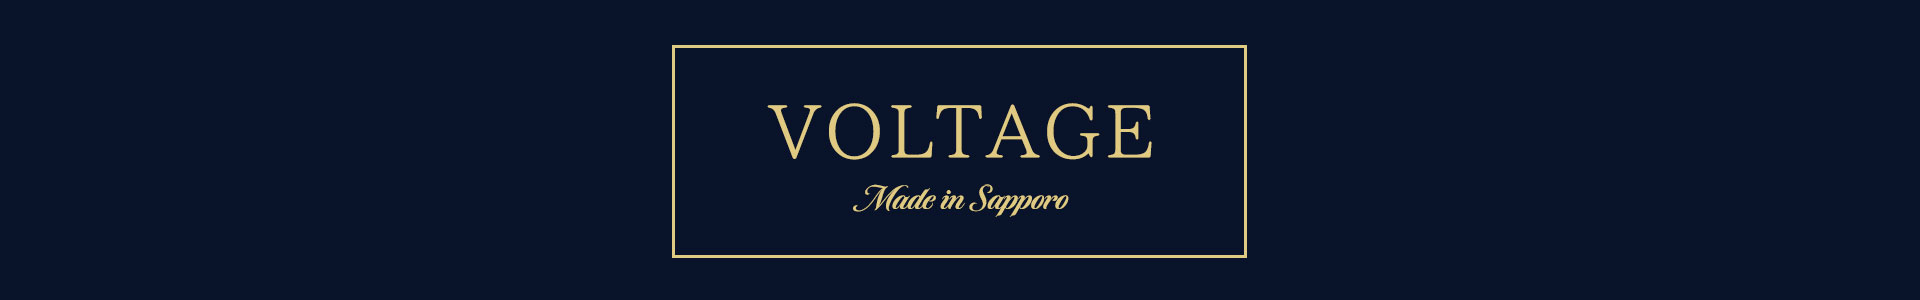 voltage_banner